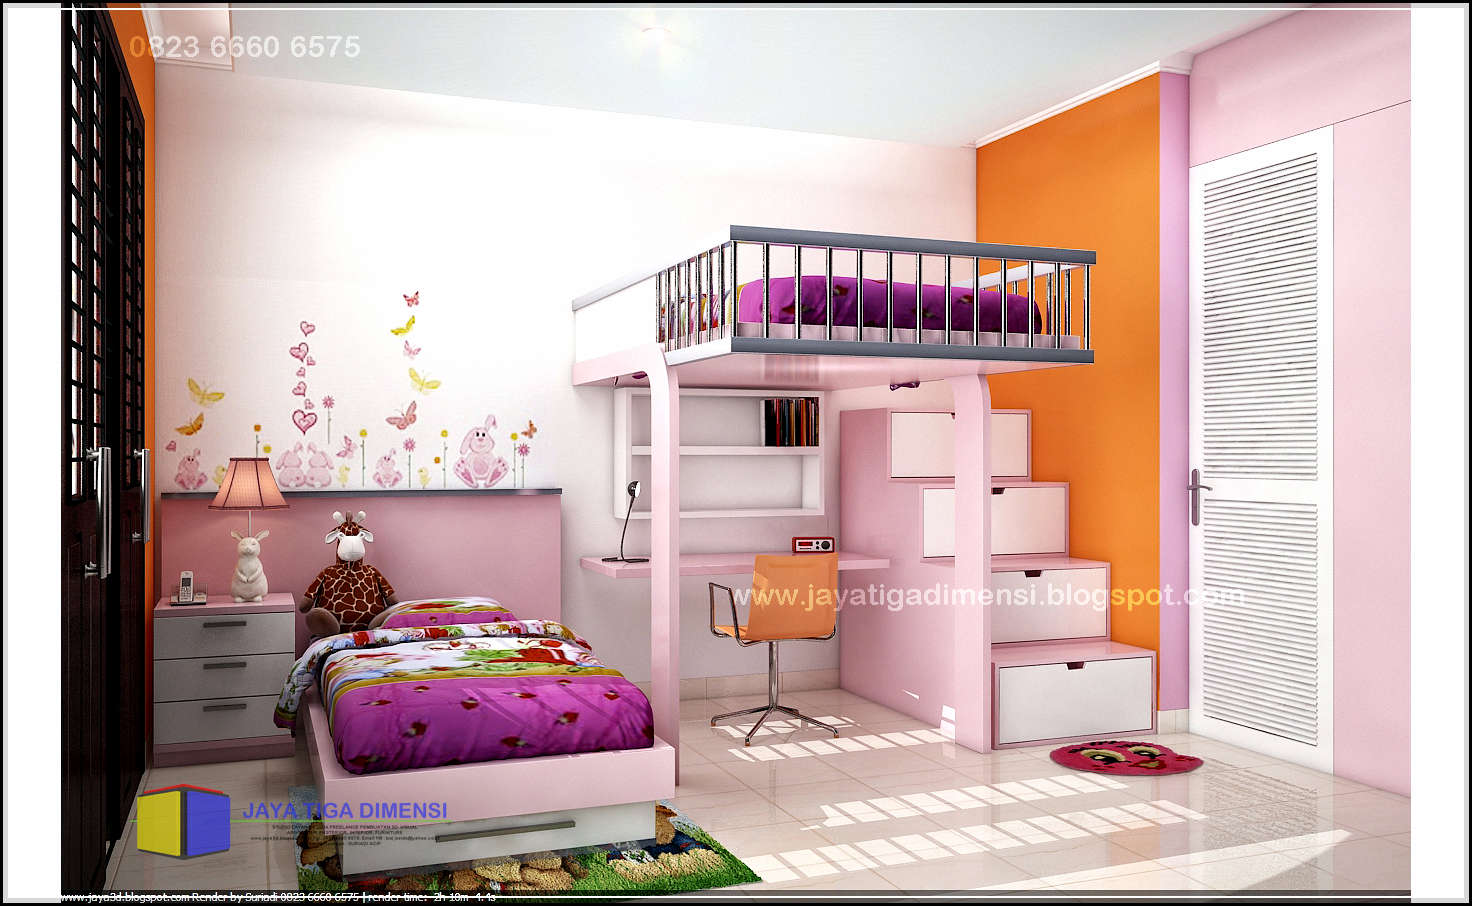 52 Dekorasi Kamar Tidur Minimalis Anak Perempuan Rumah Asia